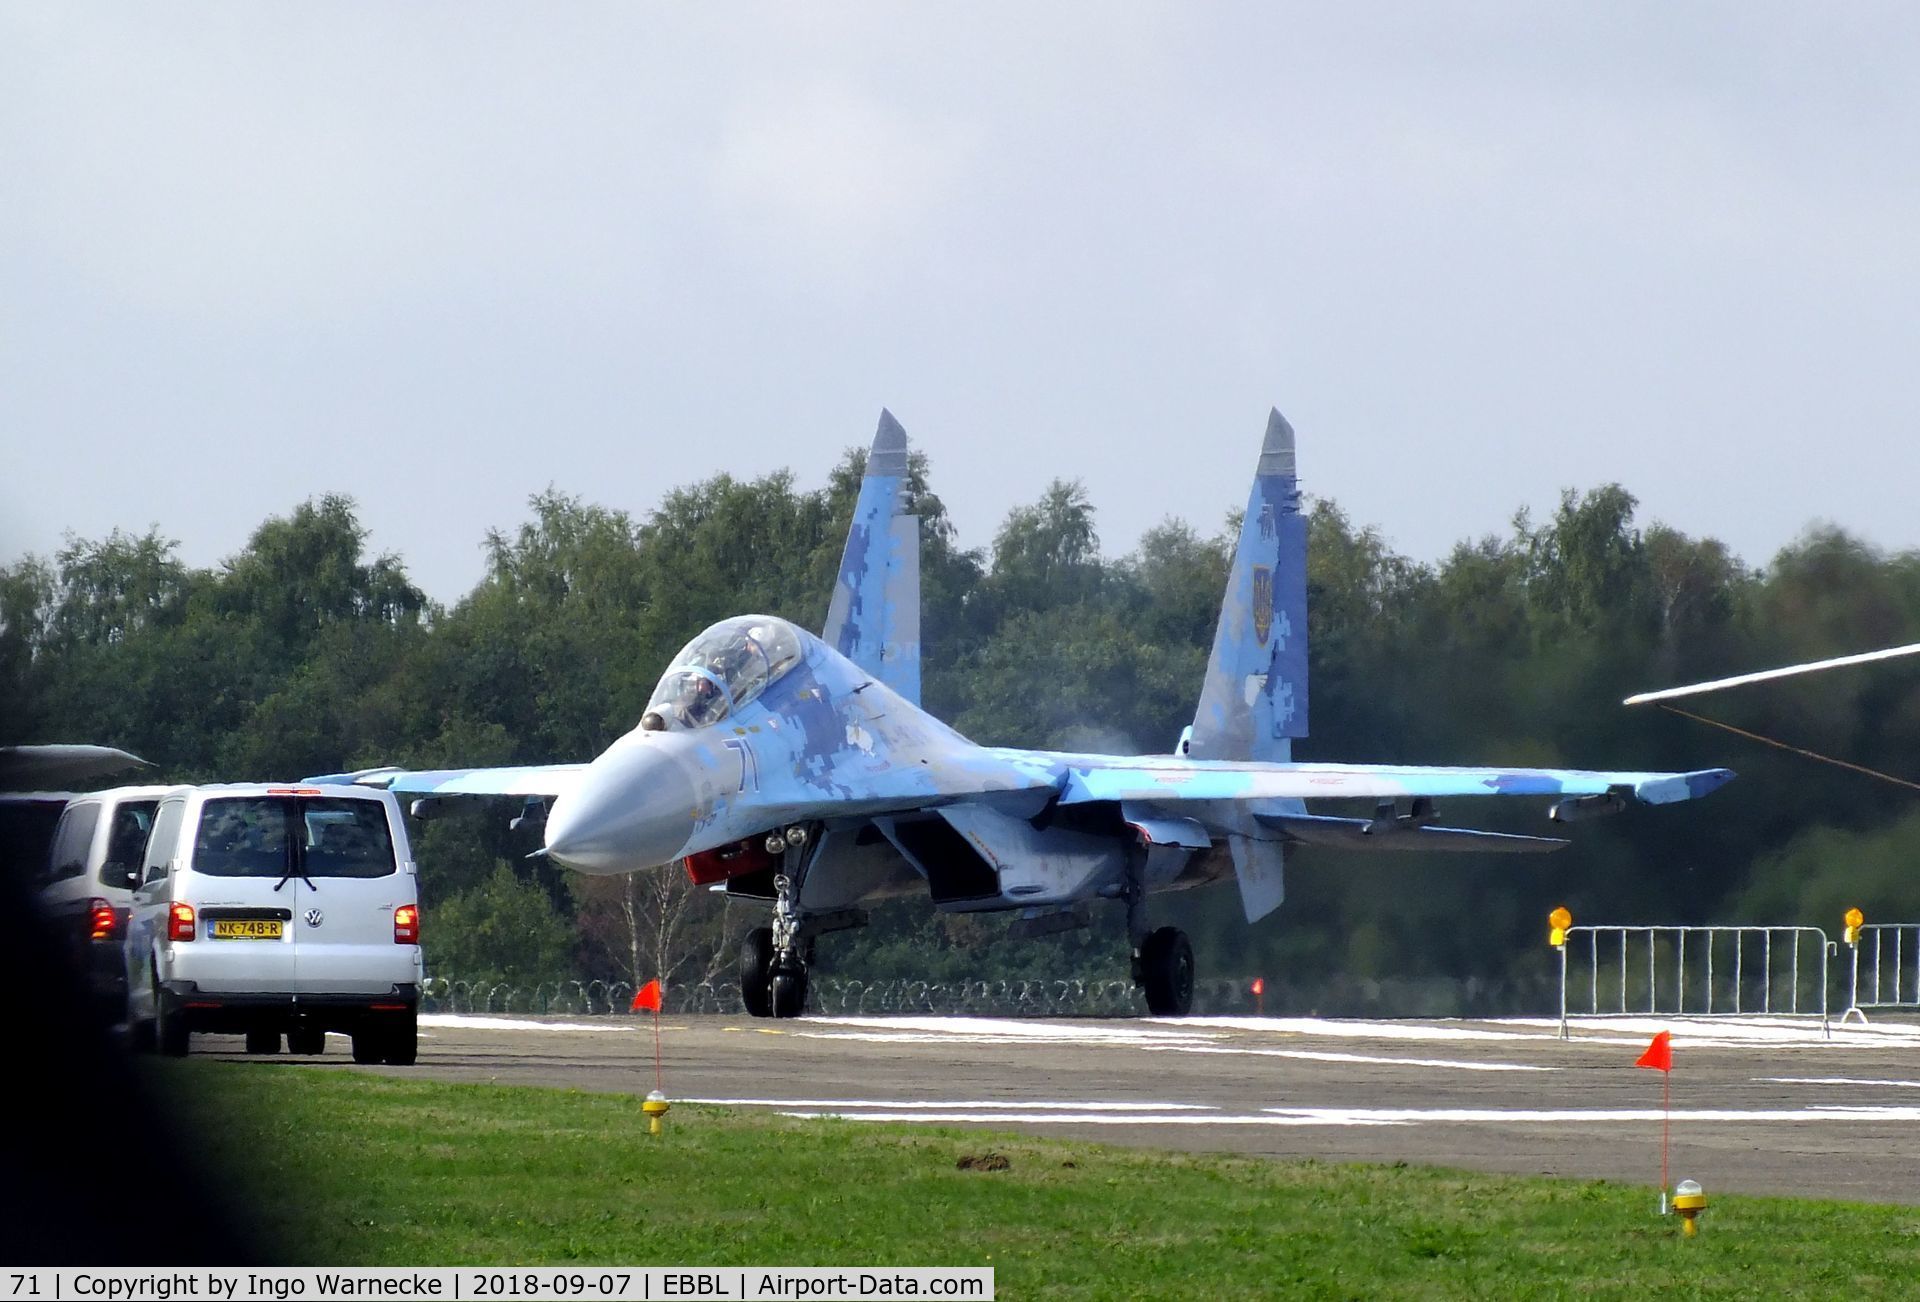 71, Sukhoi Su-27UBM1 C/N 96310424043, Sukhoi Su-27UBM1 FLANKER-C of the Ukrainian AF at the 2018 BAFD spotters day, Kleine Brogel airbase